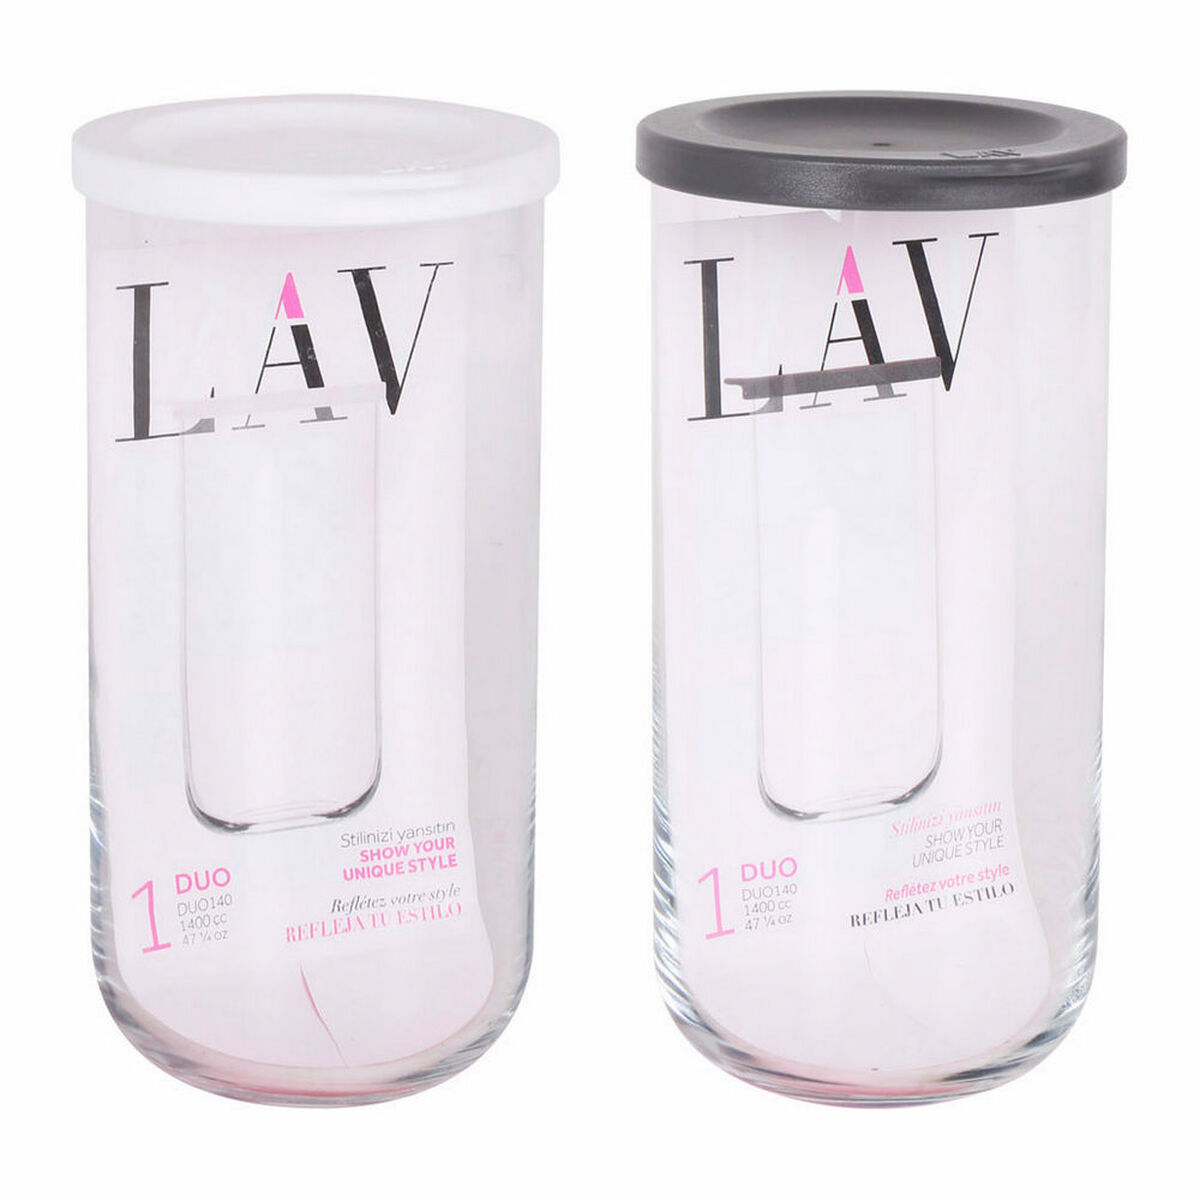 Borcan din Sticlă LAV Duo 1,4 L (10 x 21 cm)